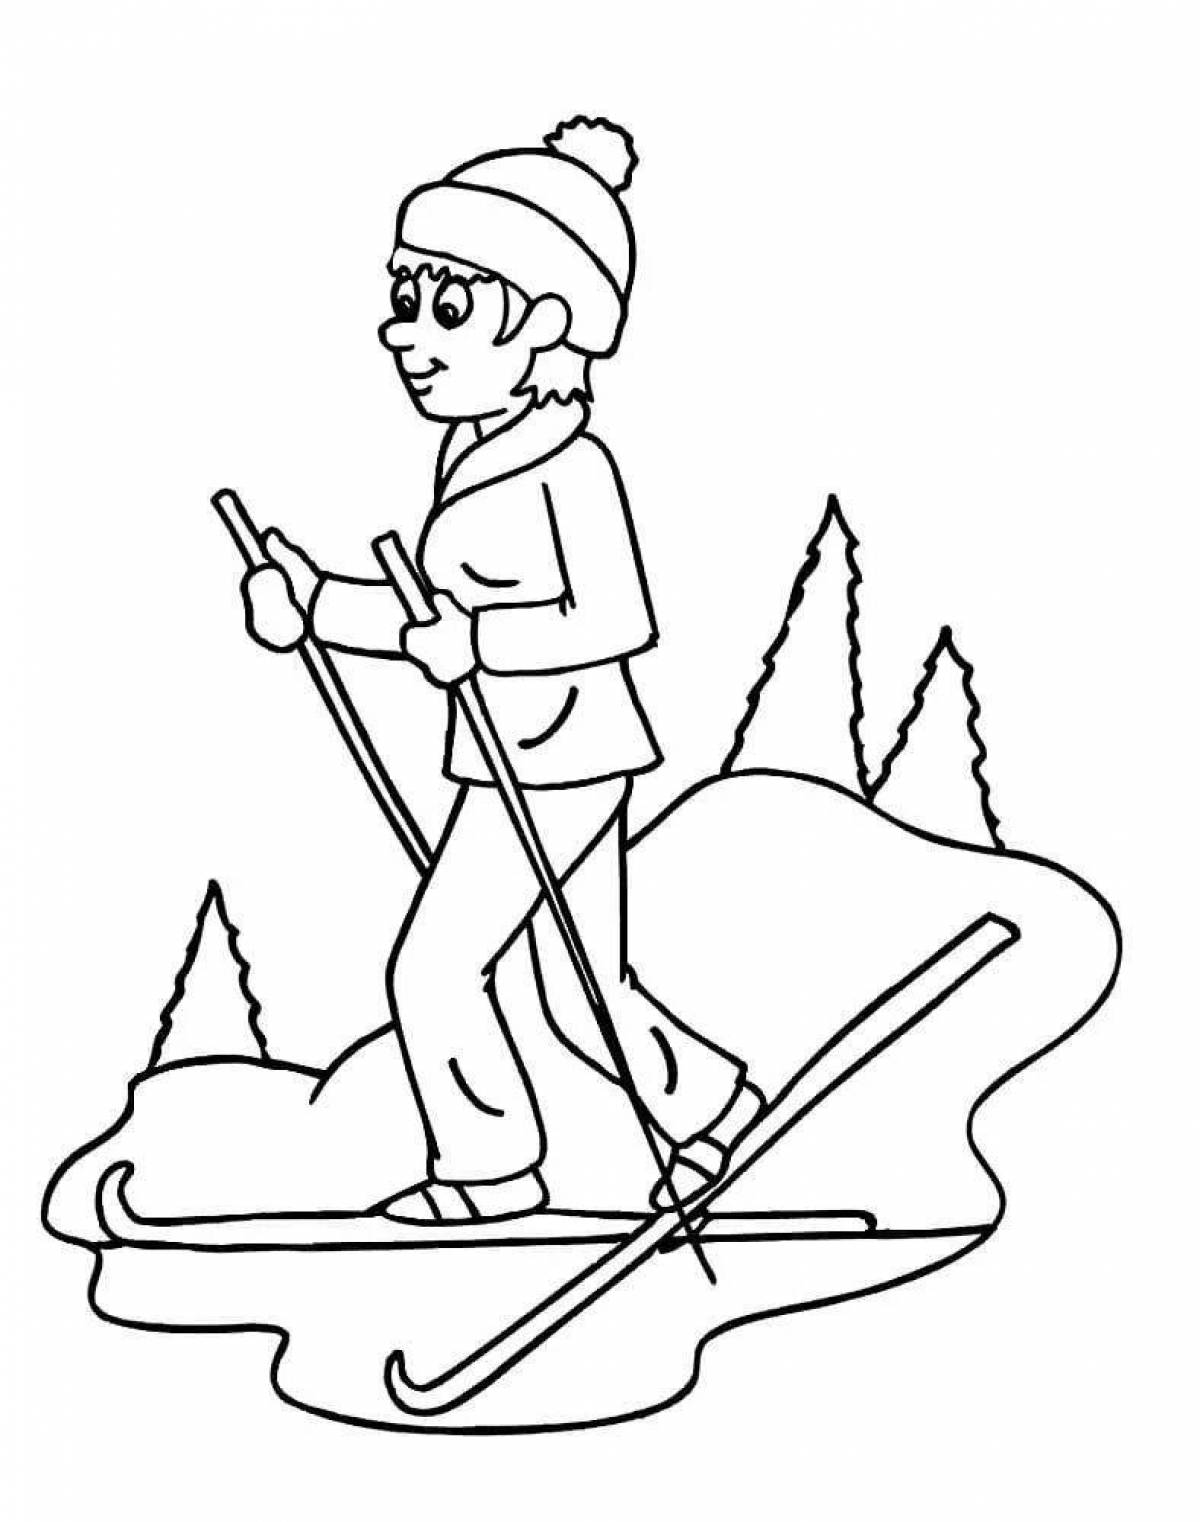 Fun skiing for kids